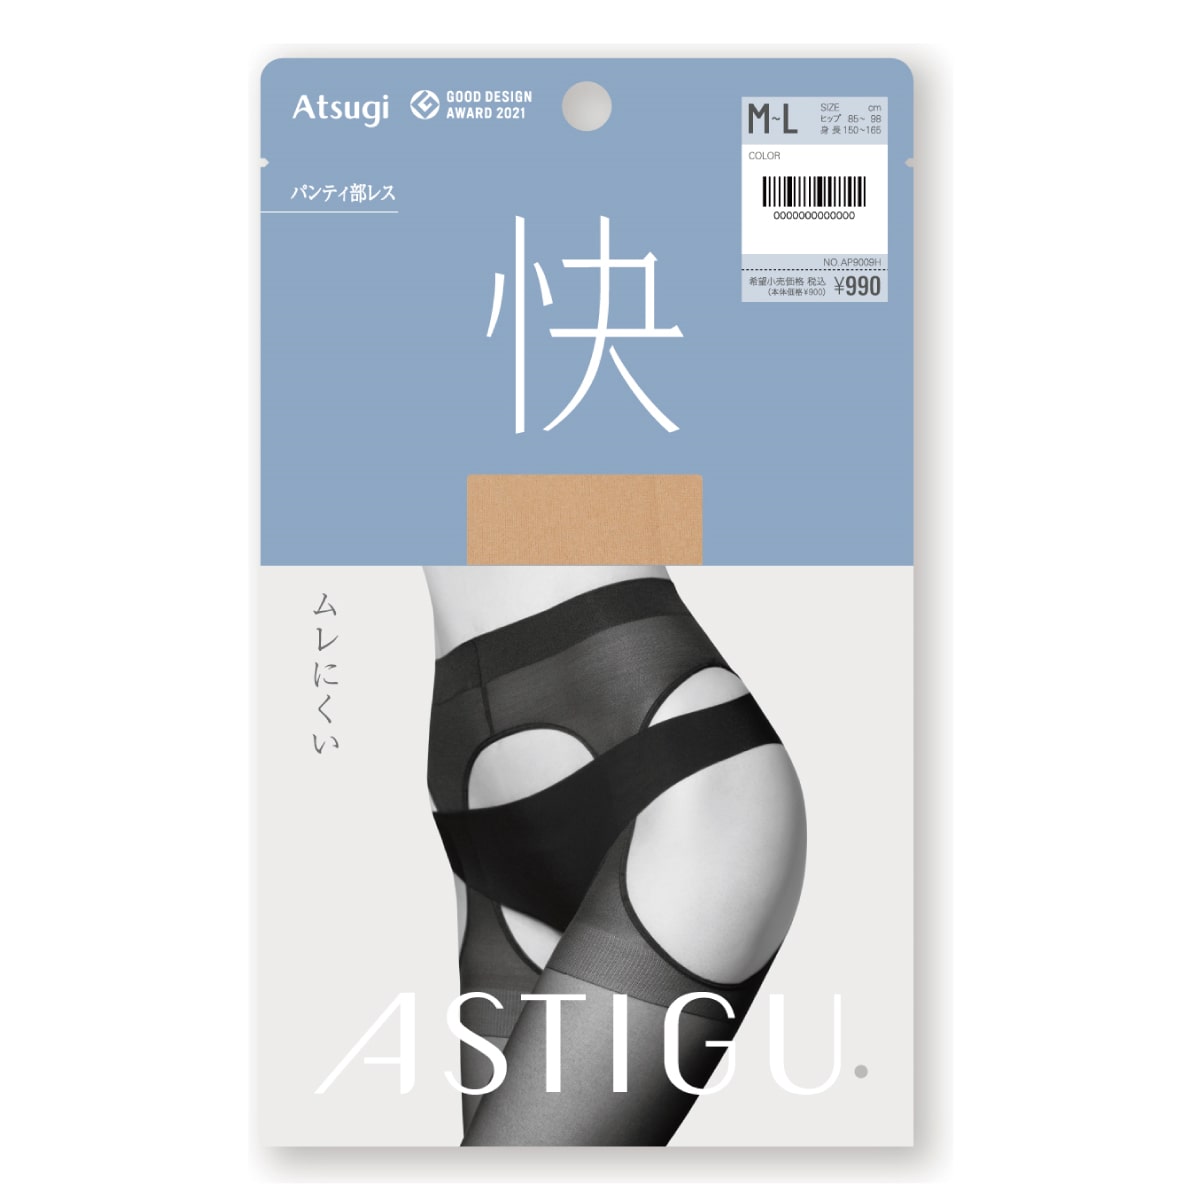 ASTIGU 【快】ムレにくい(パンティ部レス)ストッキング